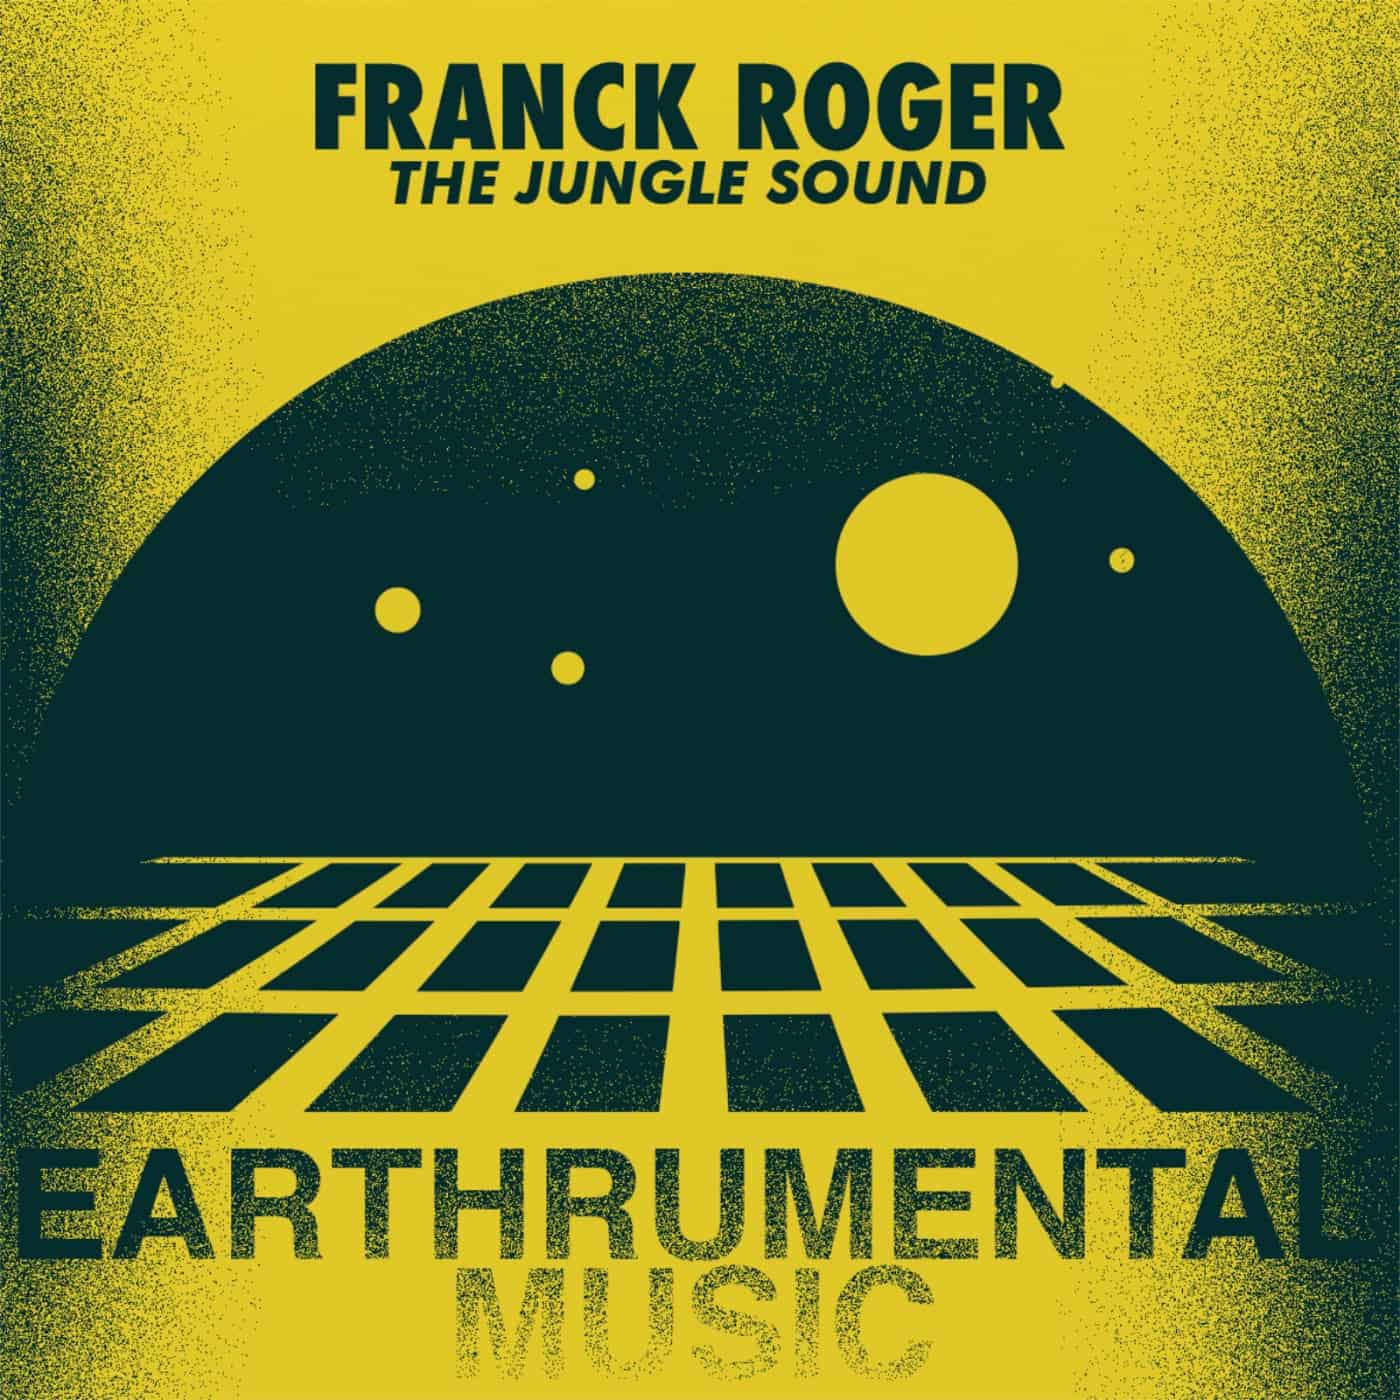 Download Franck Roger - The Jungle Sound on Electrobuzz